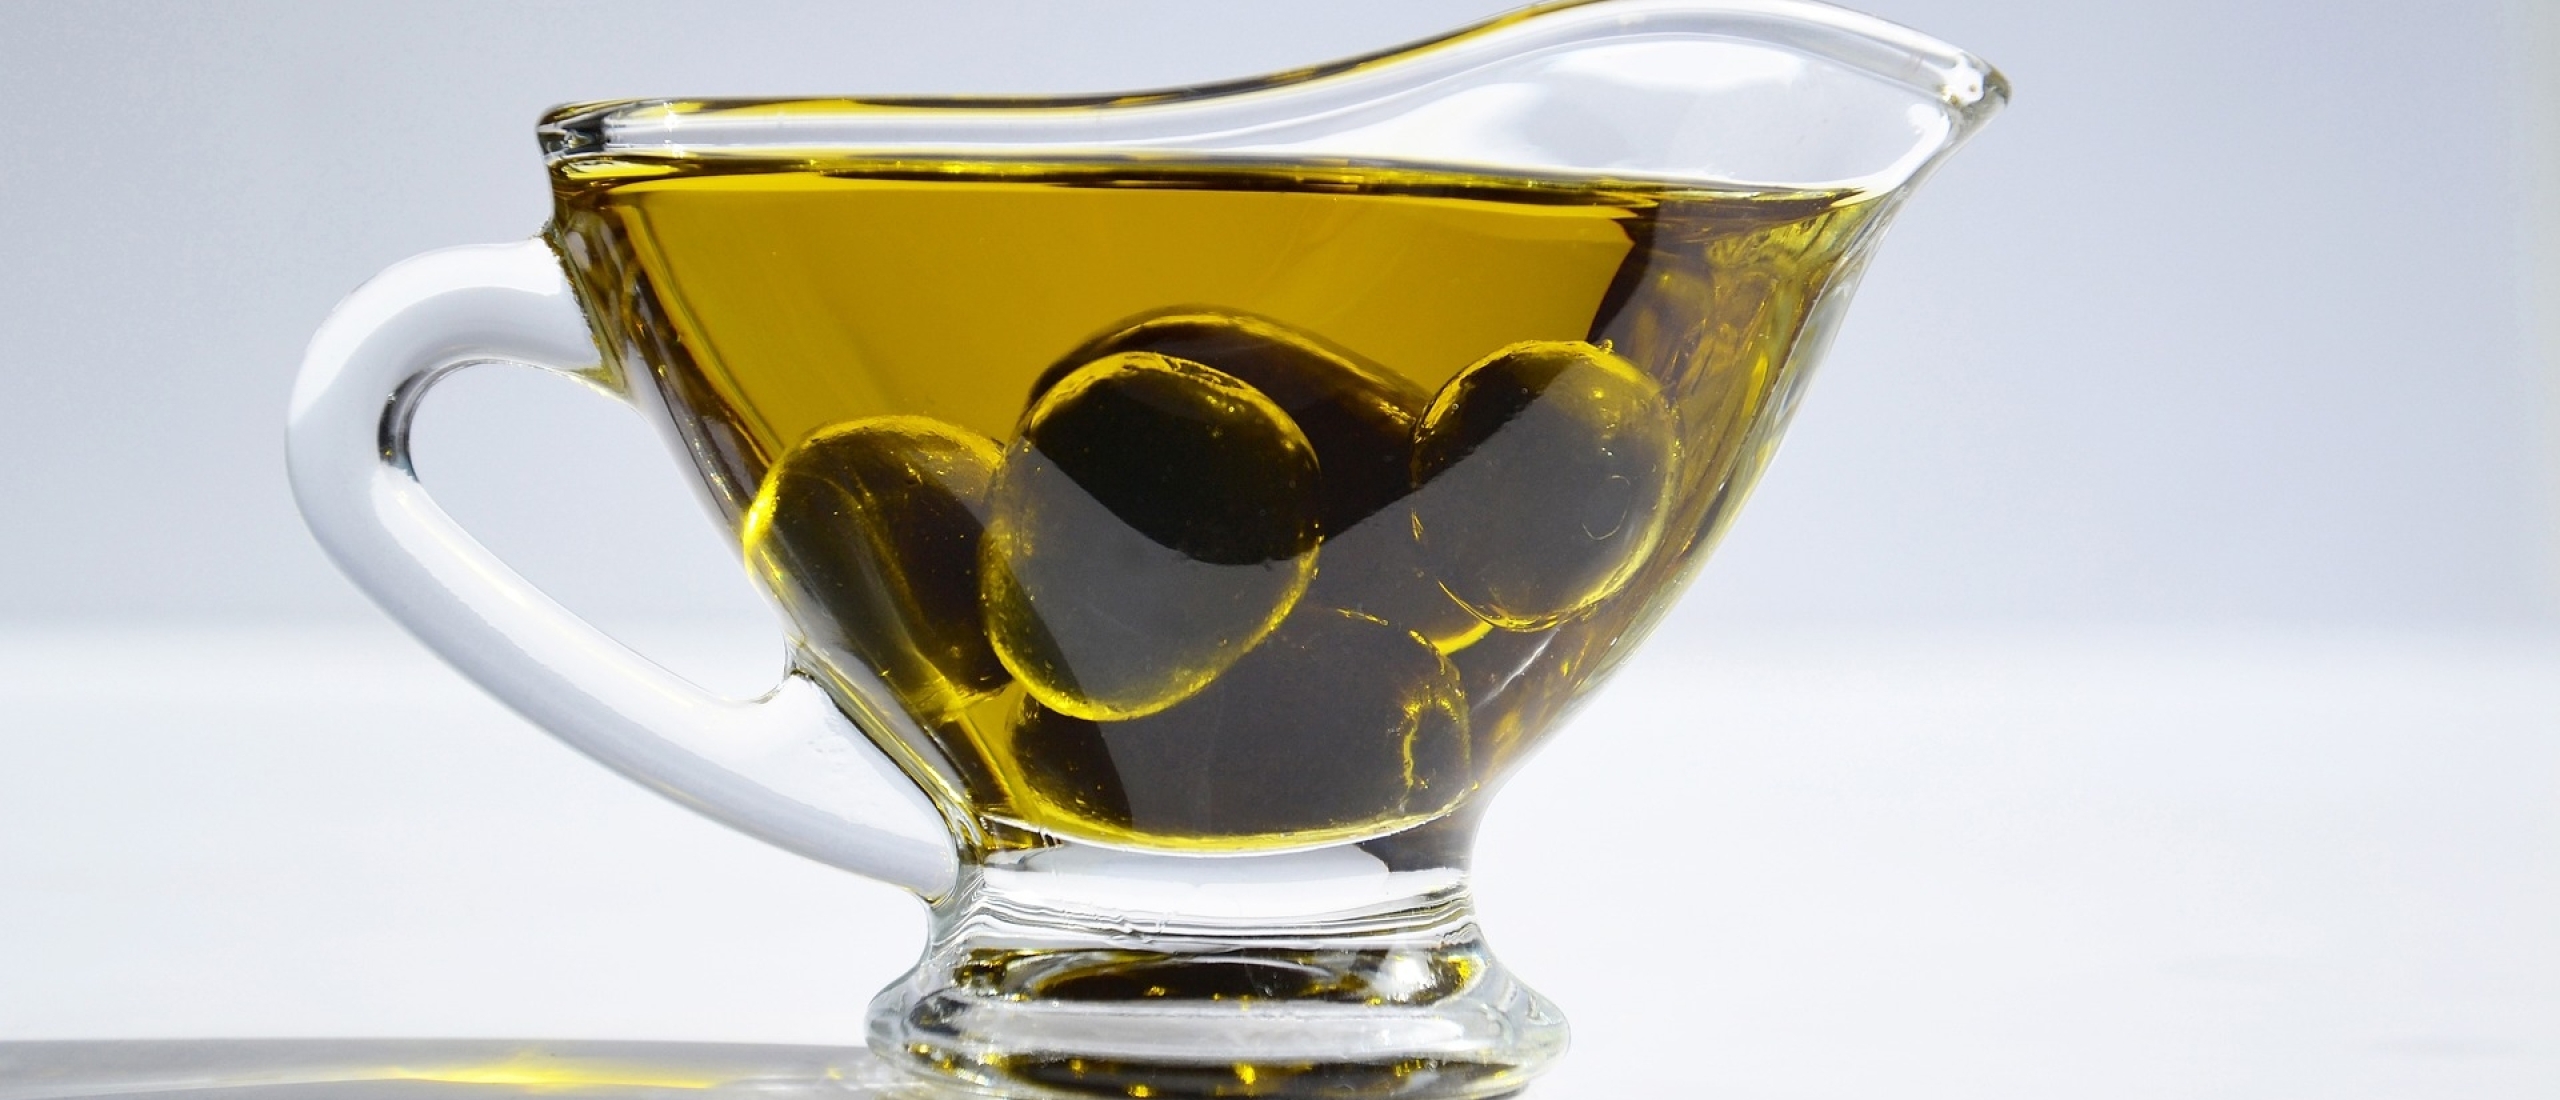 Hoe kies je de beste olijfolie voor jouw gerechten?